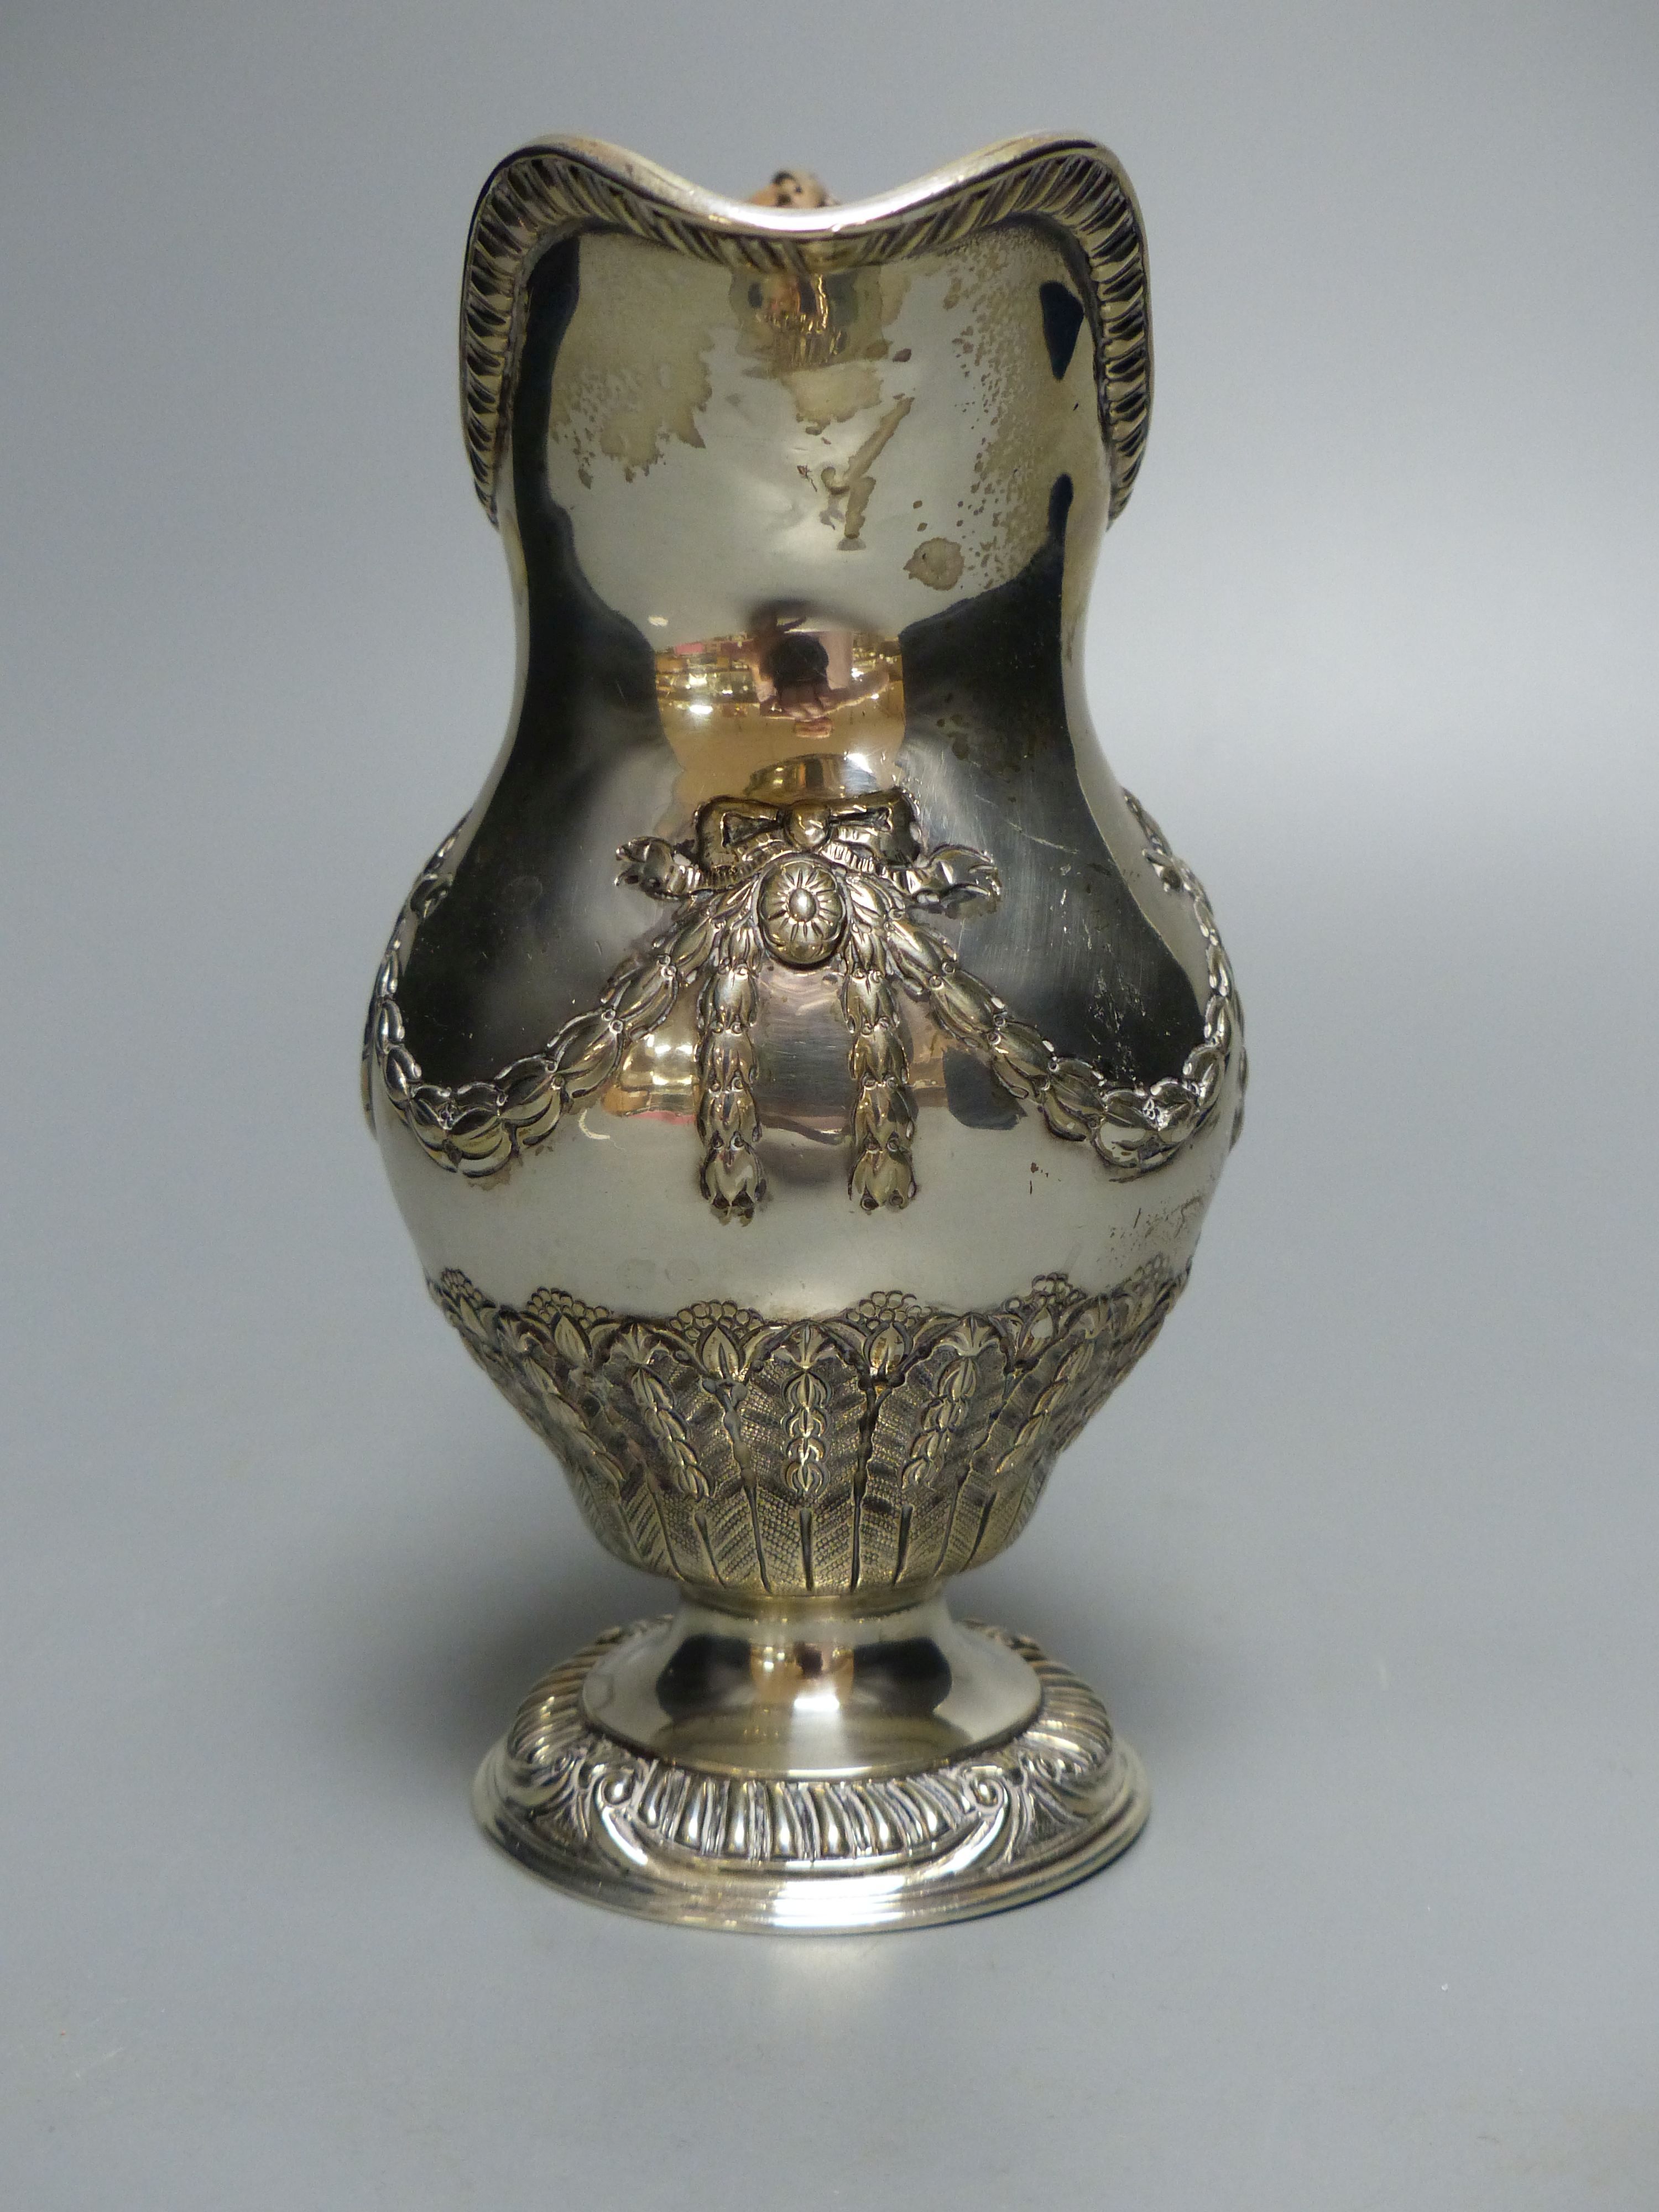 An Edwardian silver cream jug, with rattan handle, Goldsmiths & Silversmiths Co Ltd, London, 1909, 15.5cm, 8oz.